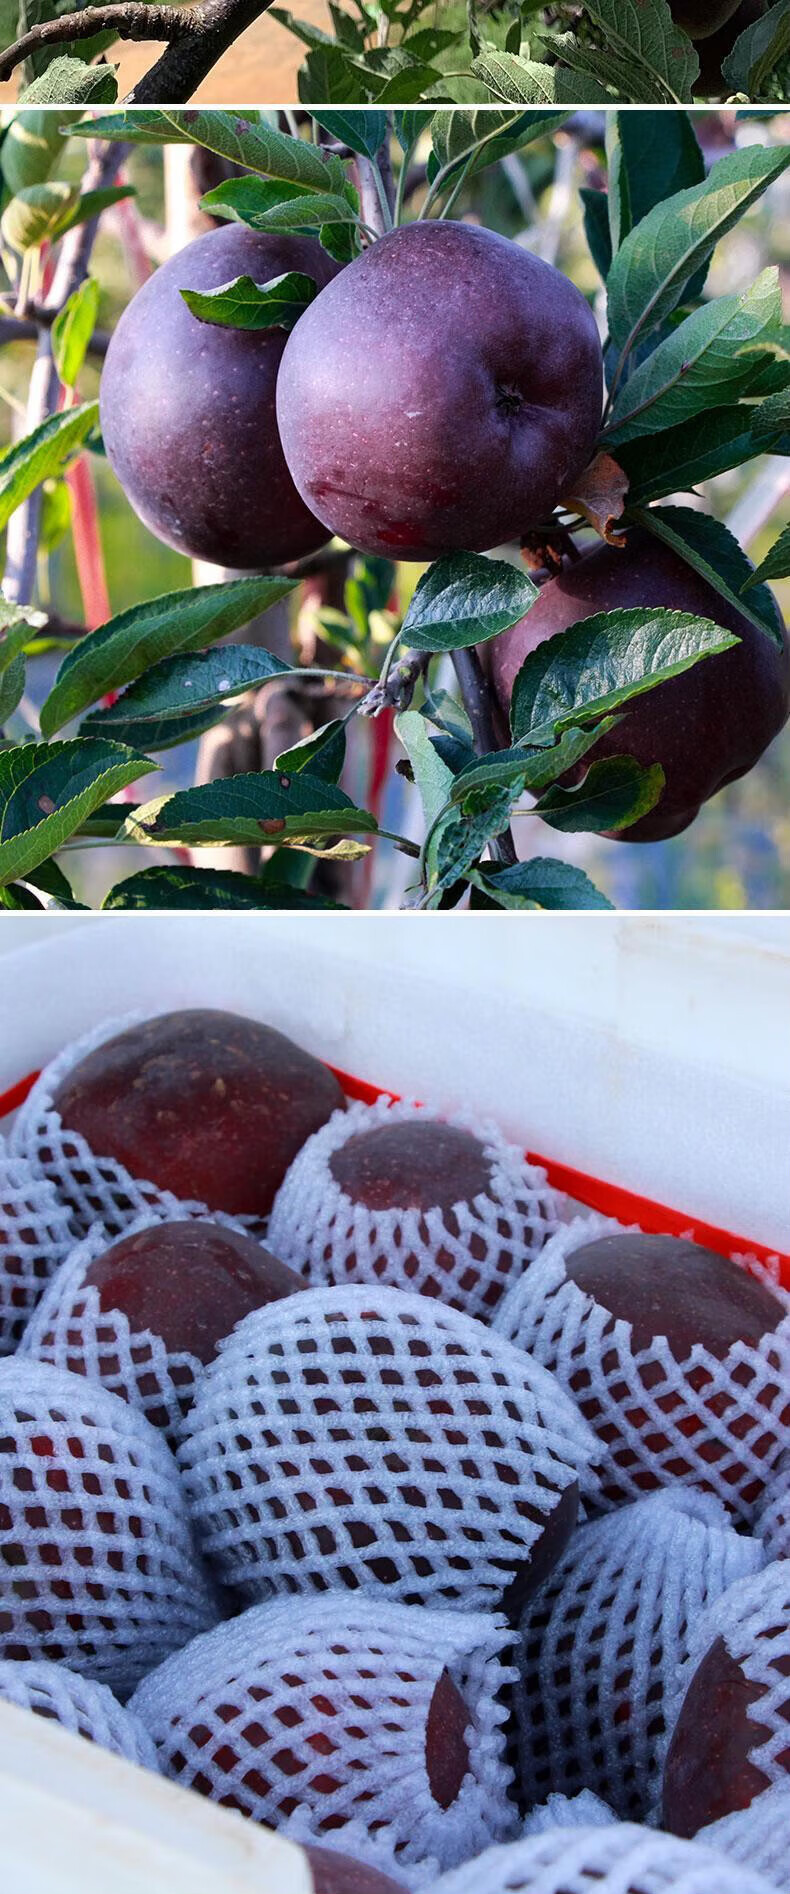 源外园黑钻苹果新鲜黑卡苹果黑苹果不常见的水果当季罕见稀有紫色圣诞